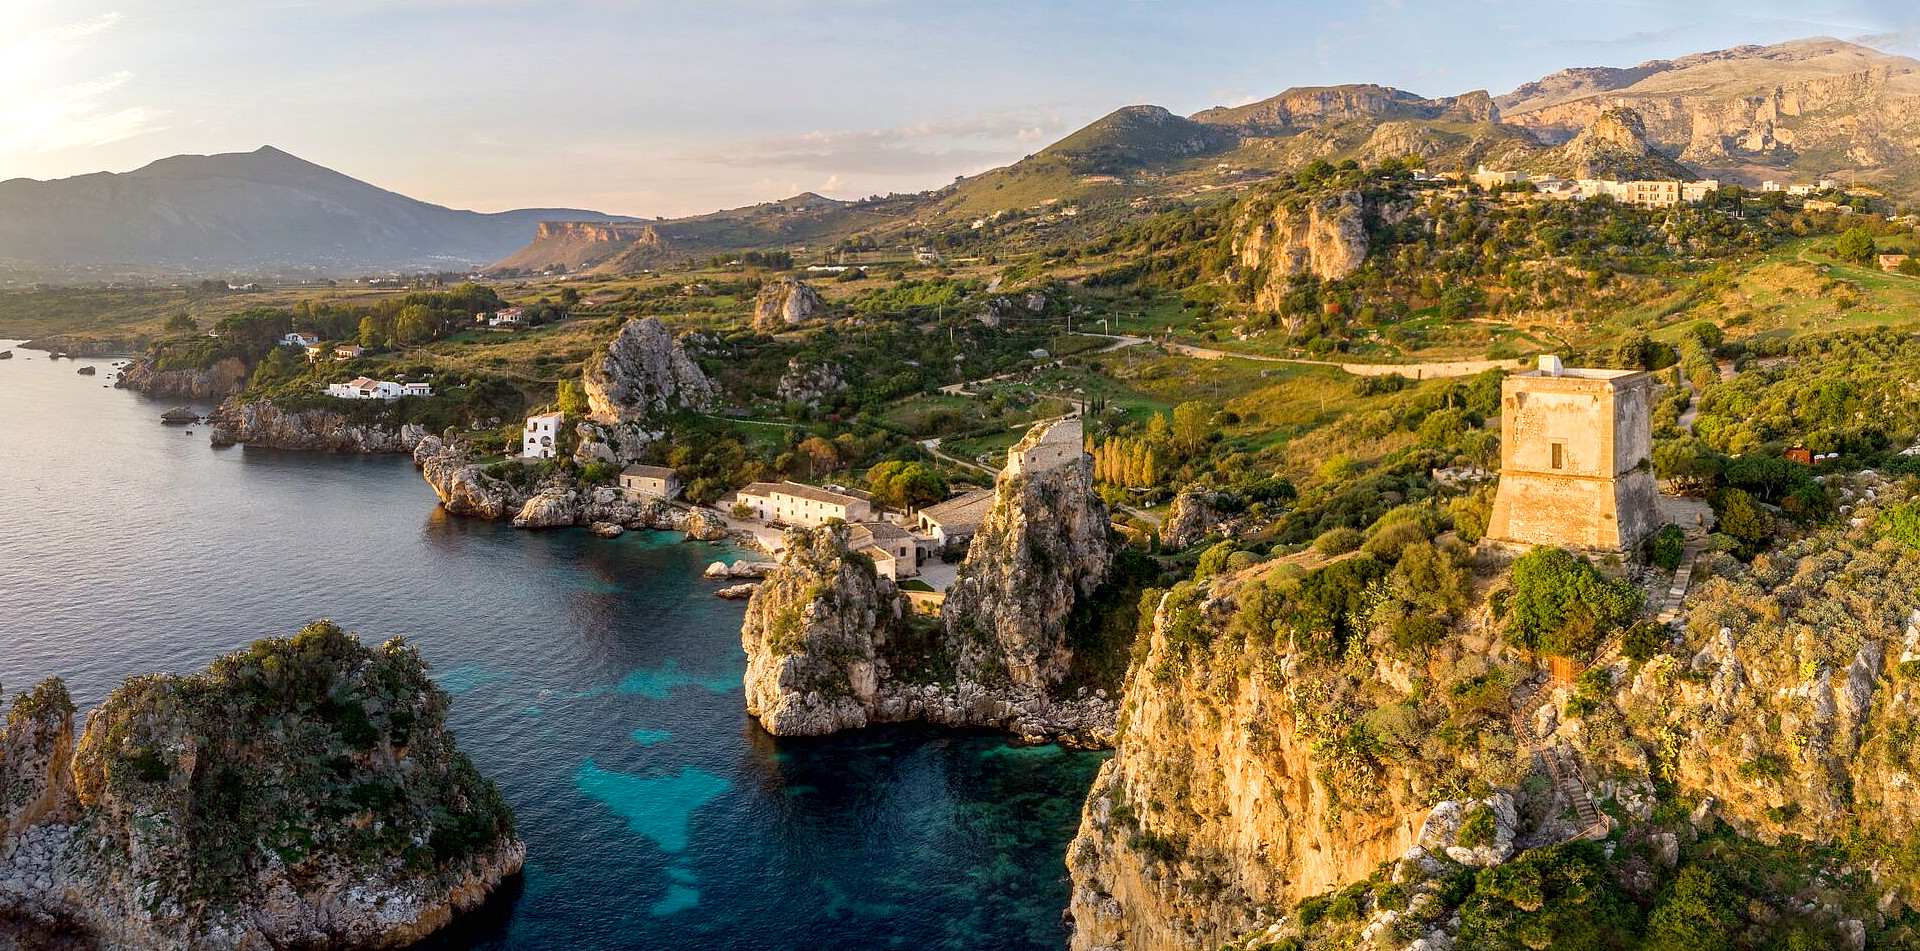 Sea, earth, rocks, culture, that's Sicily!